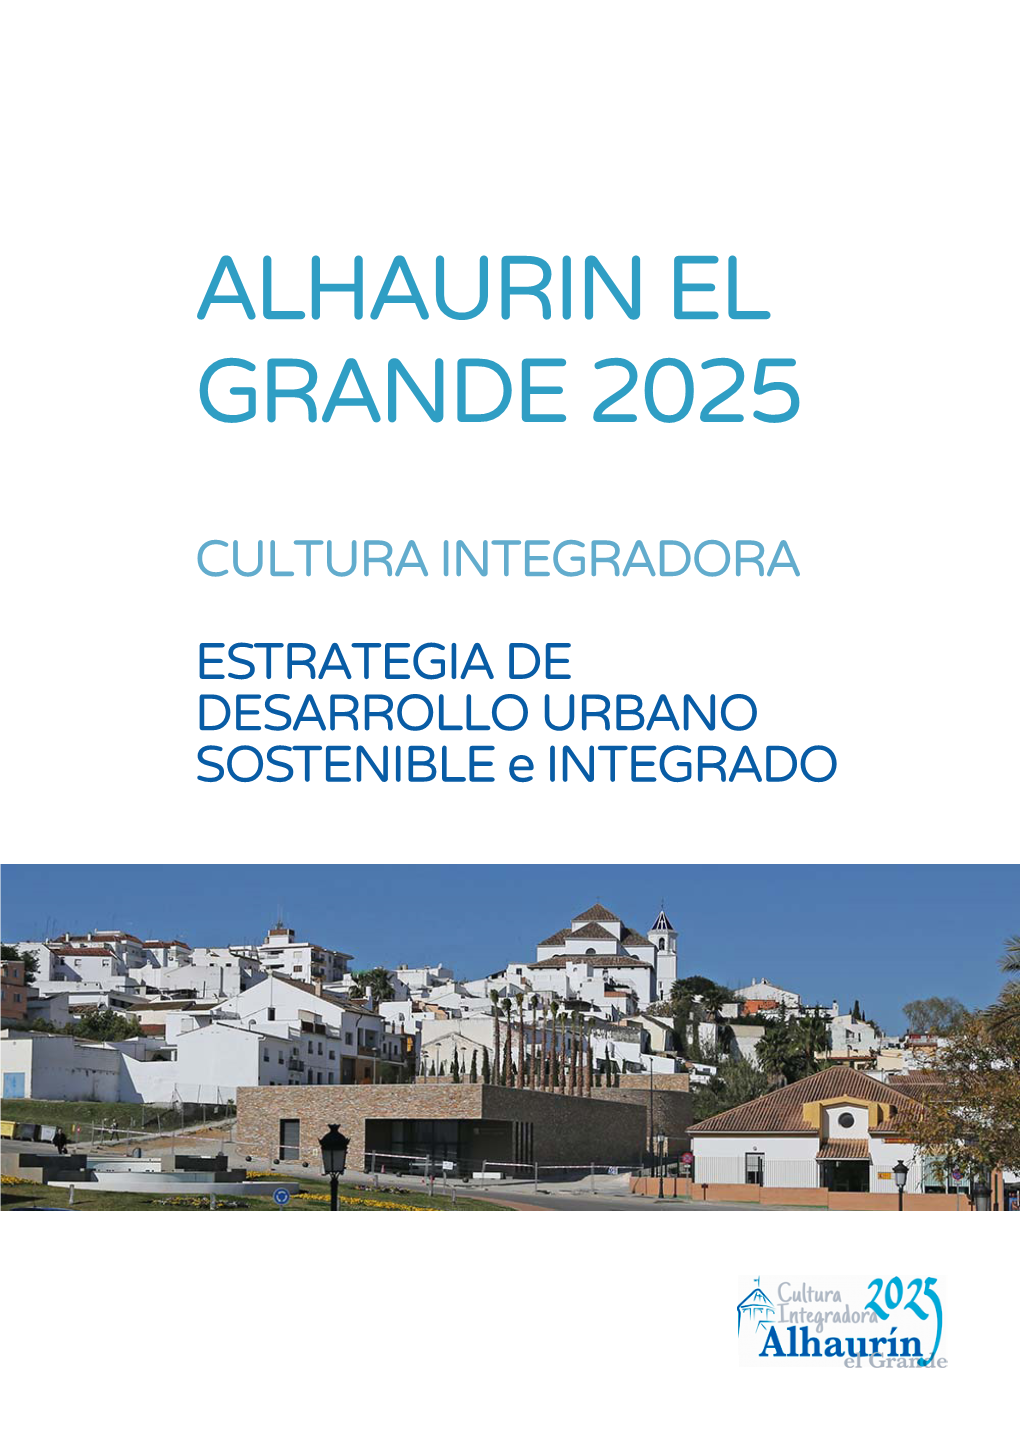 Alhaurin El Grande 2025